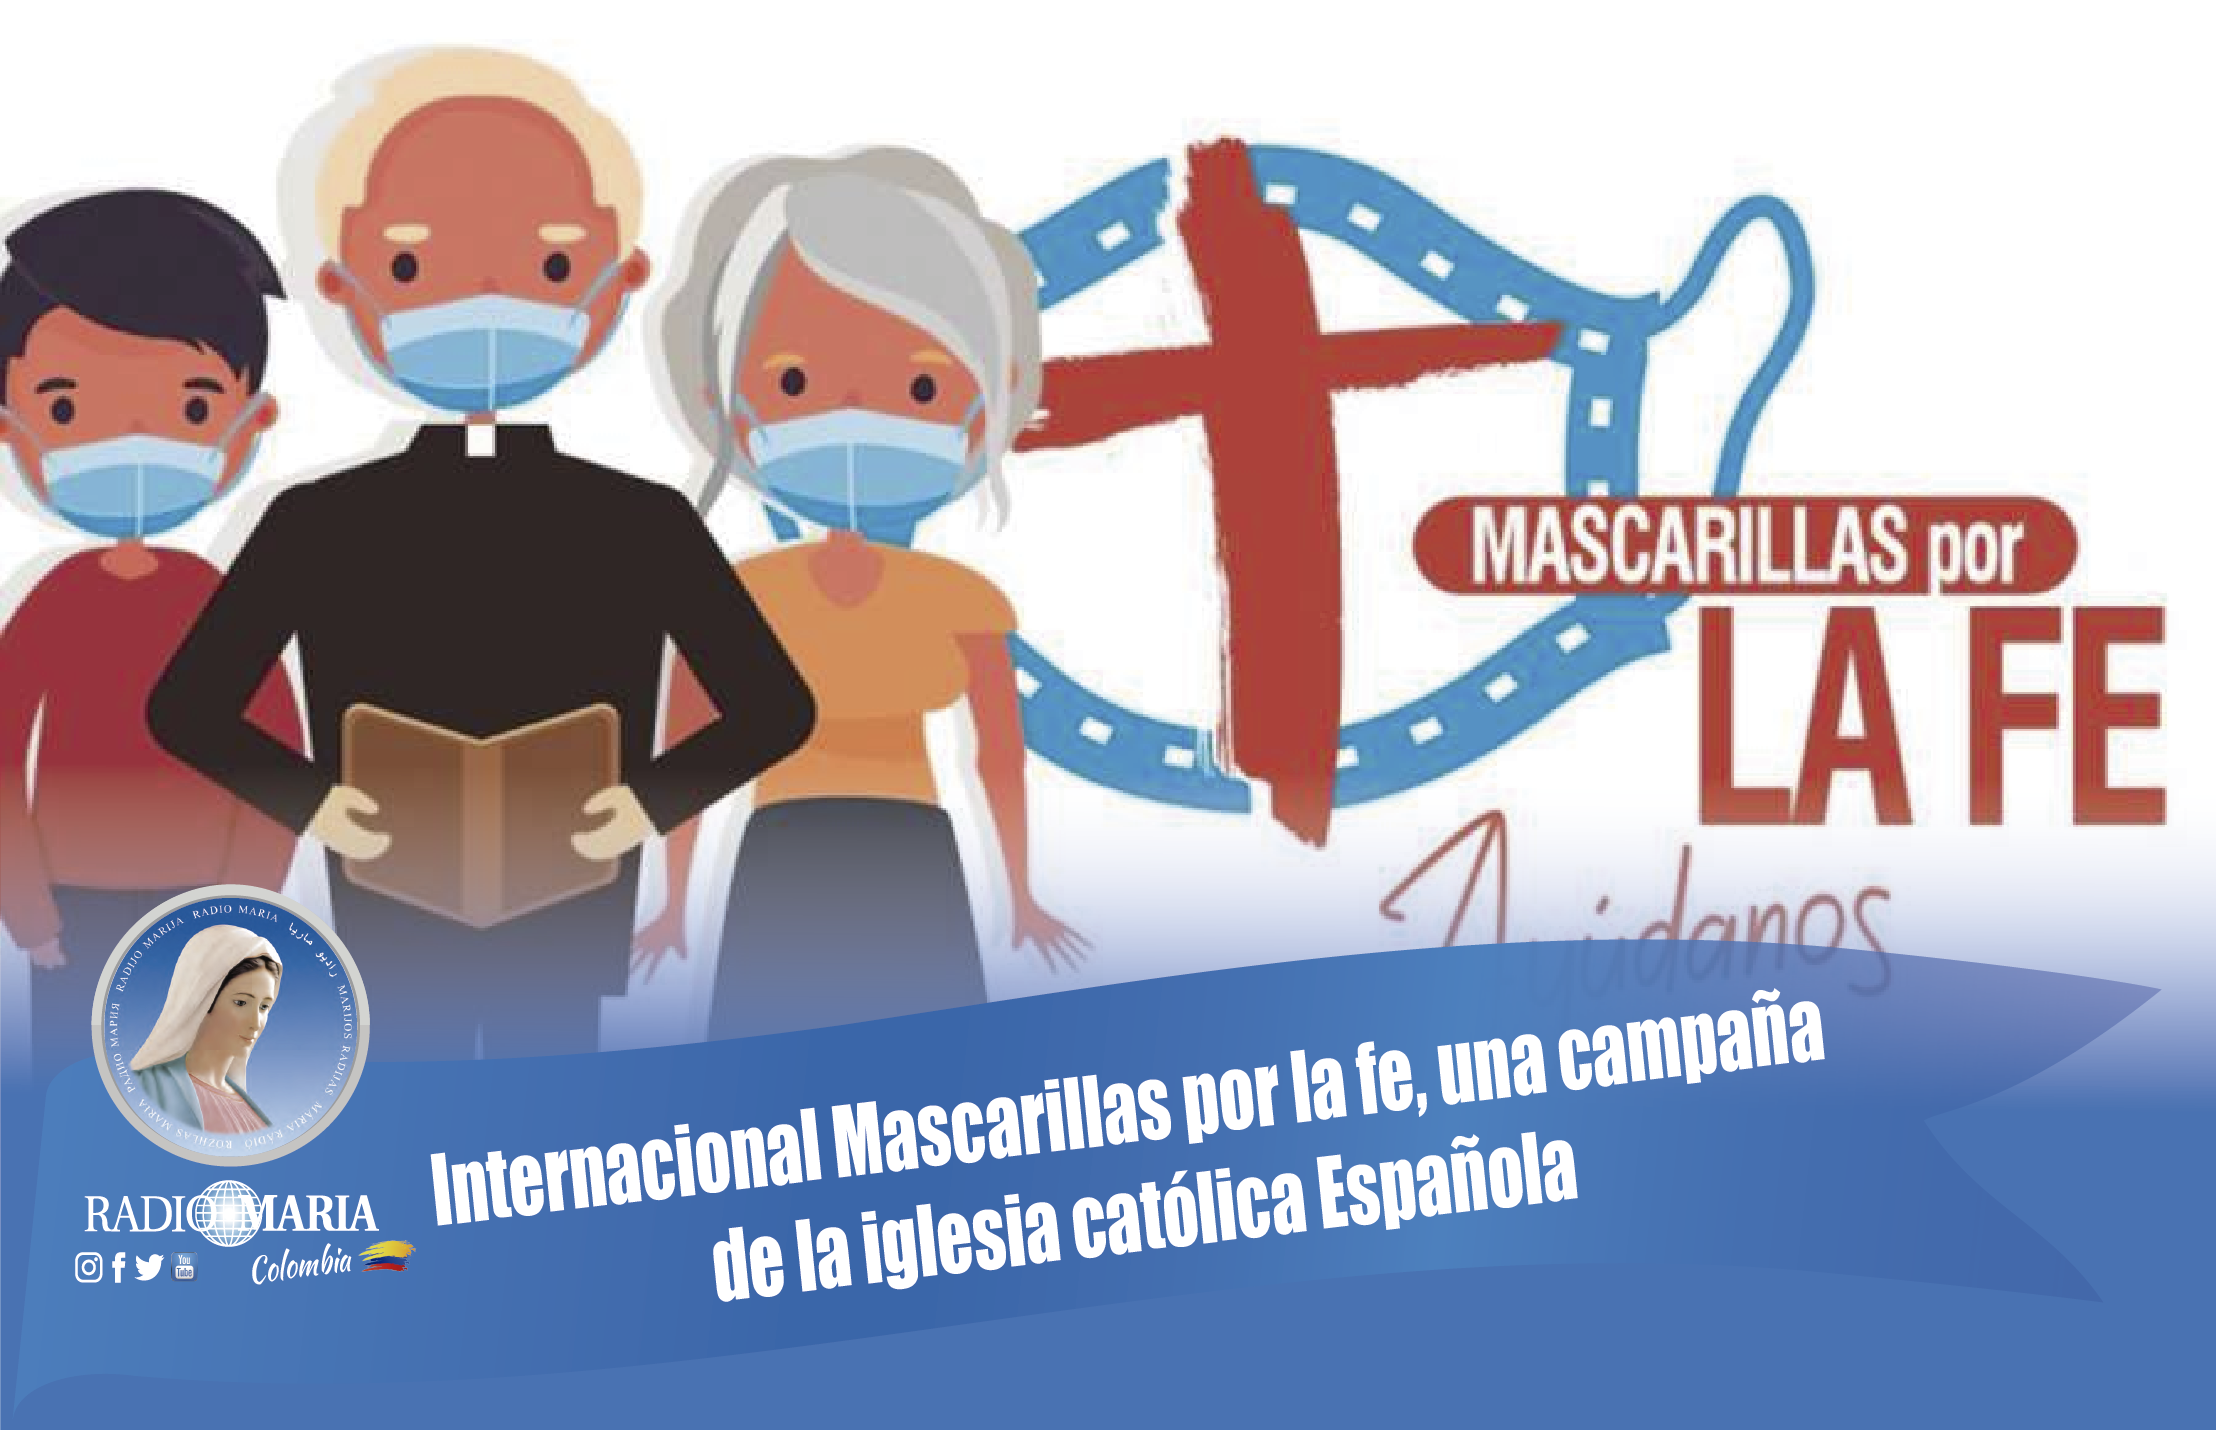 Internacional Mascarillas por la fe, una campaña de la iglesia católica  Española.